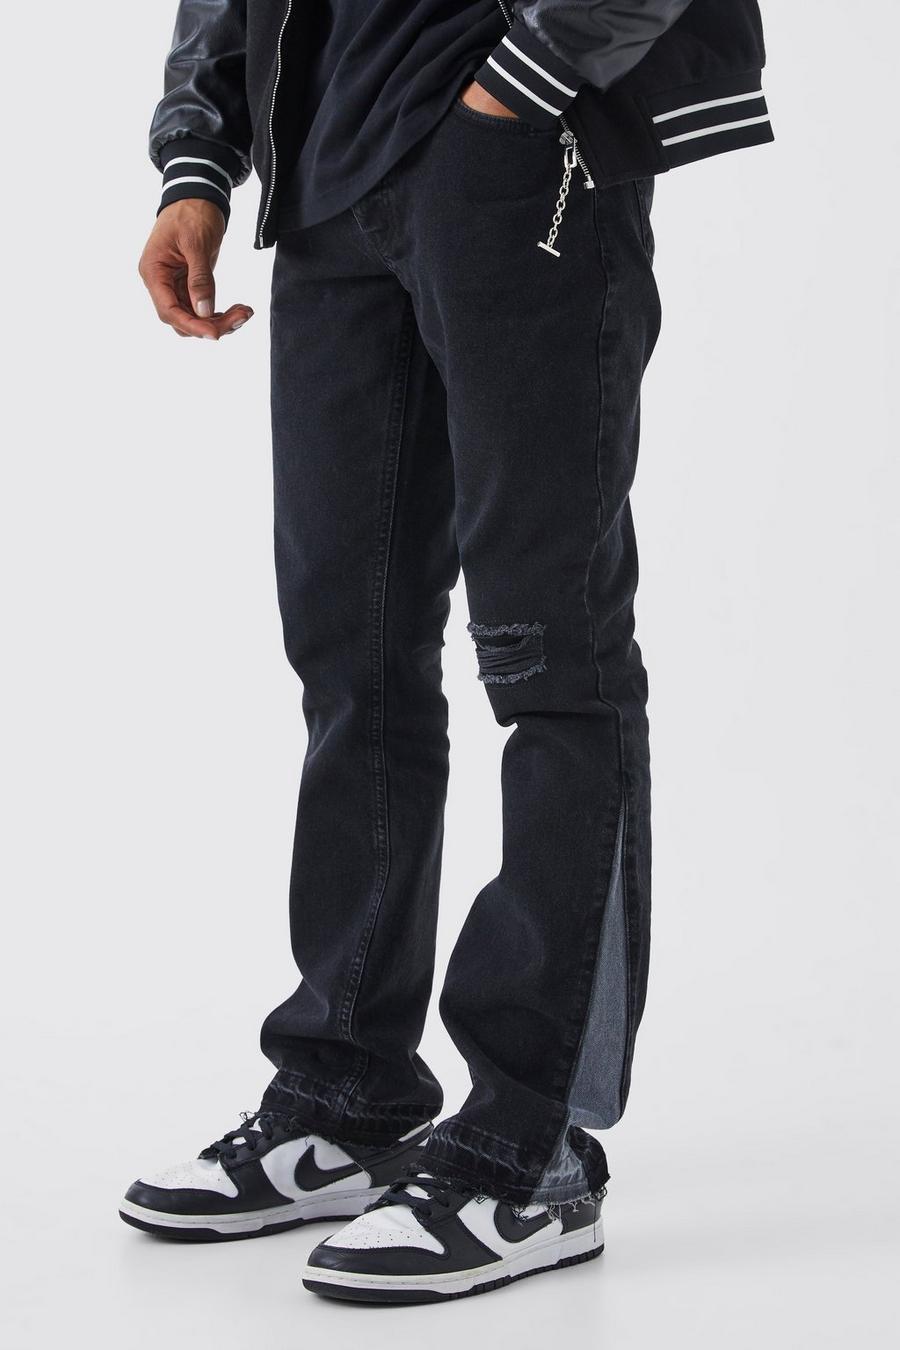 Jeans a zampa Slim Fit in denim rigido con strappi e inserti a contrasto, Washed black